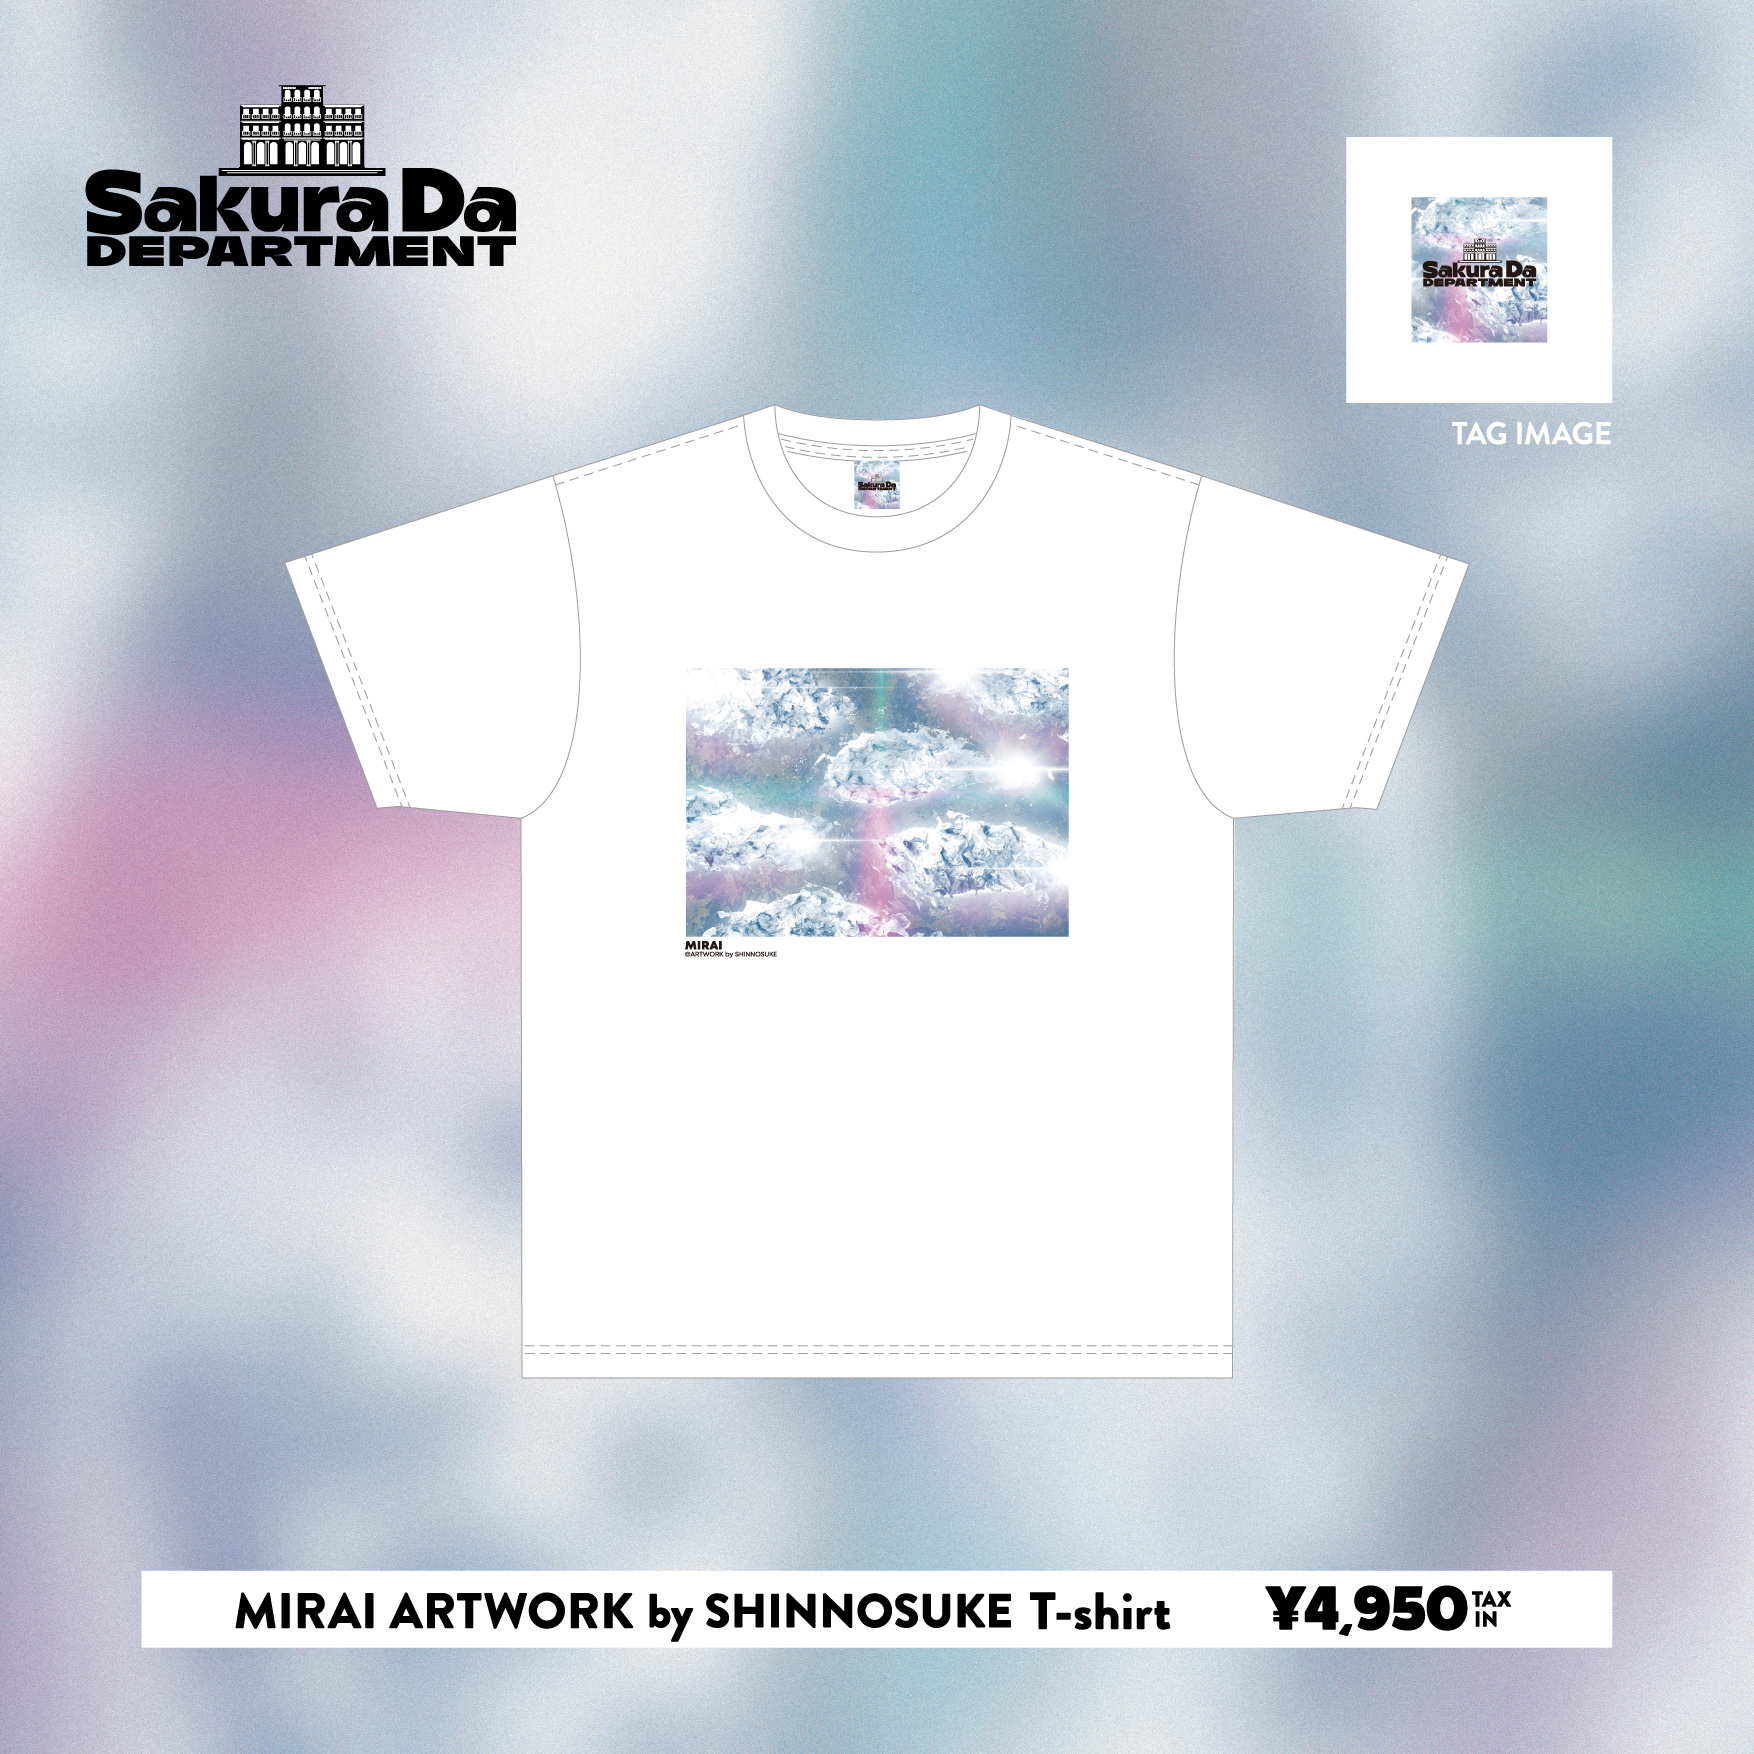 新グッズ「MIRAI ARTWORK by SHINNOSUKE T-shirt」登場‼︎POPUP「Sakura da Department」会場販売のお知らせ